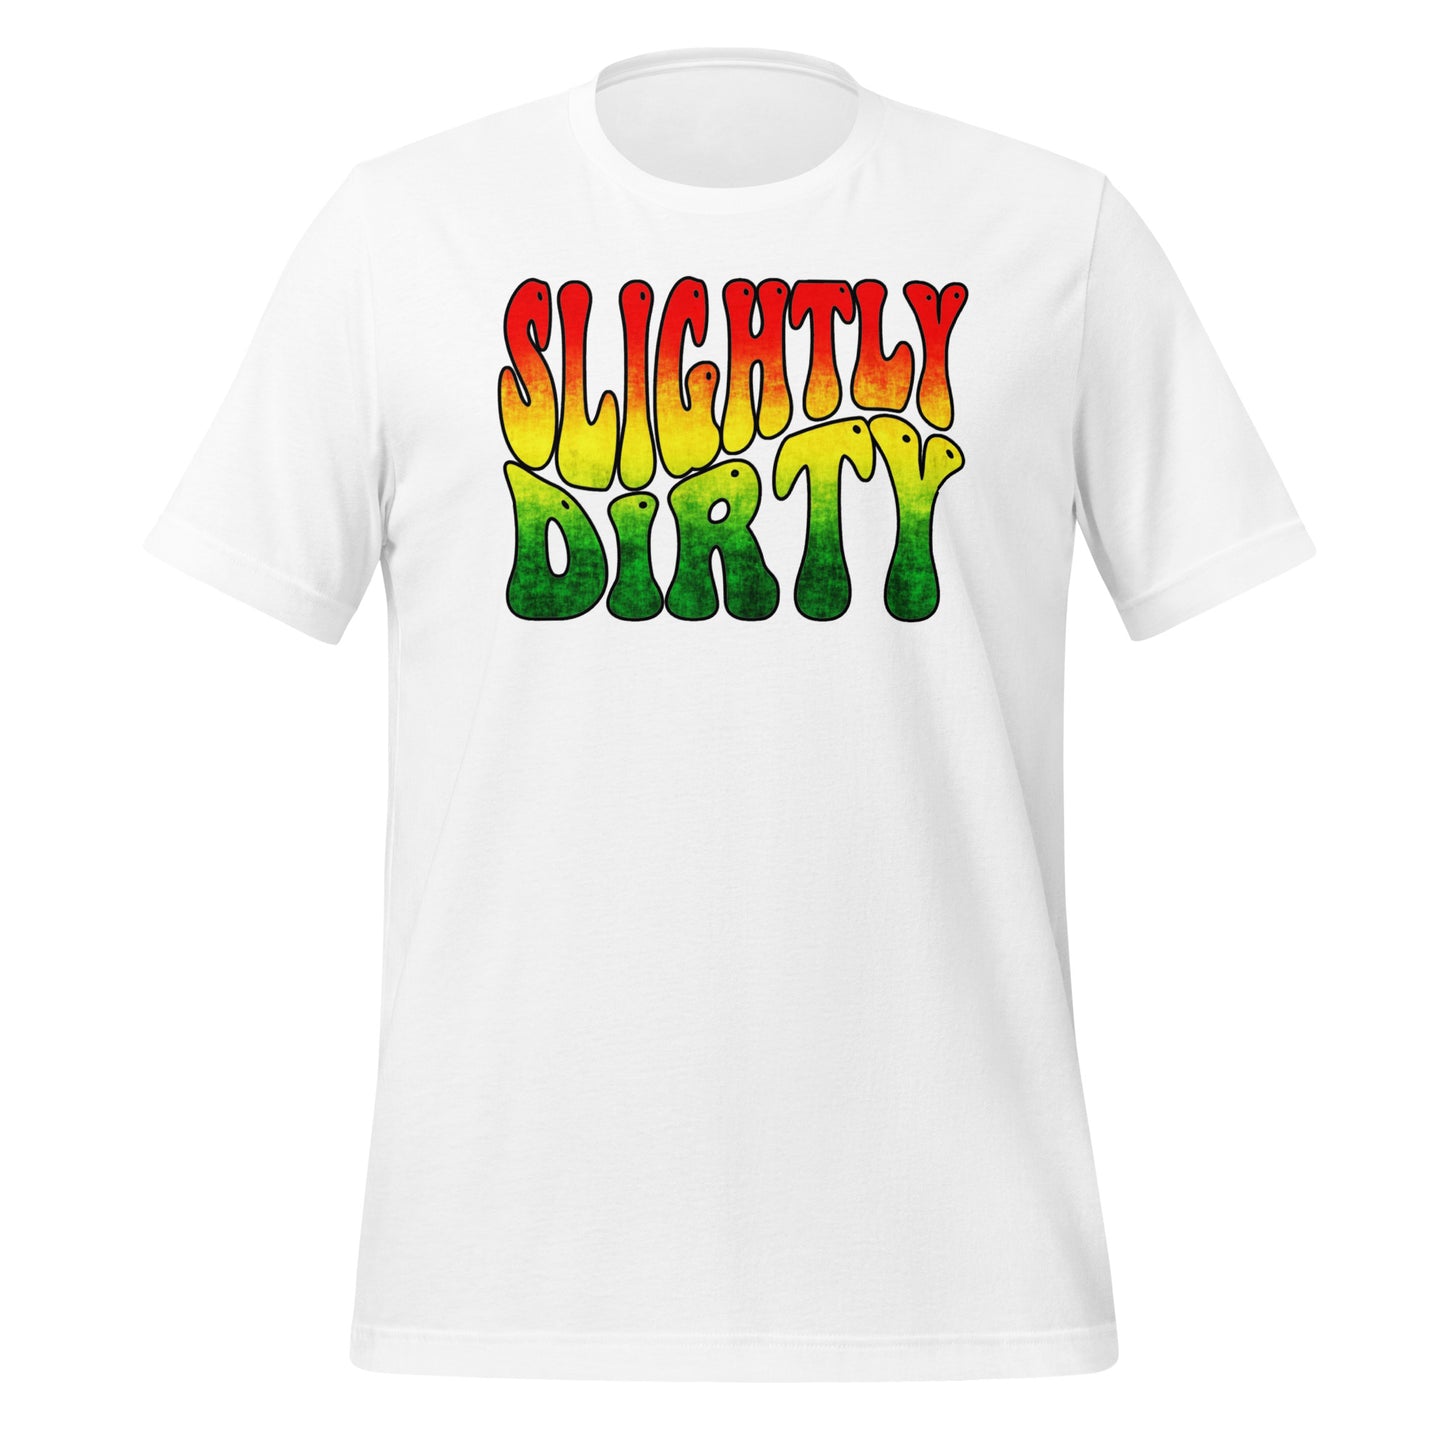 Slightly Dirty Rasta Unisex t-shirt